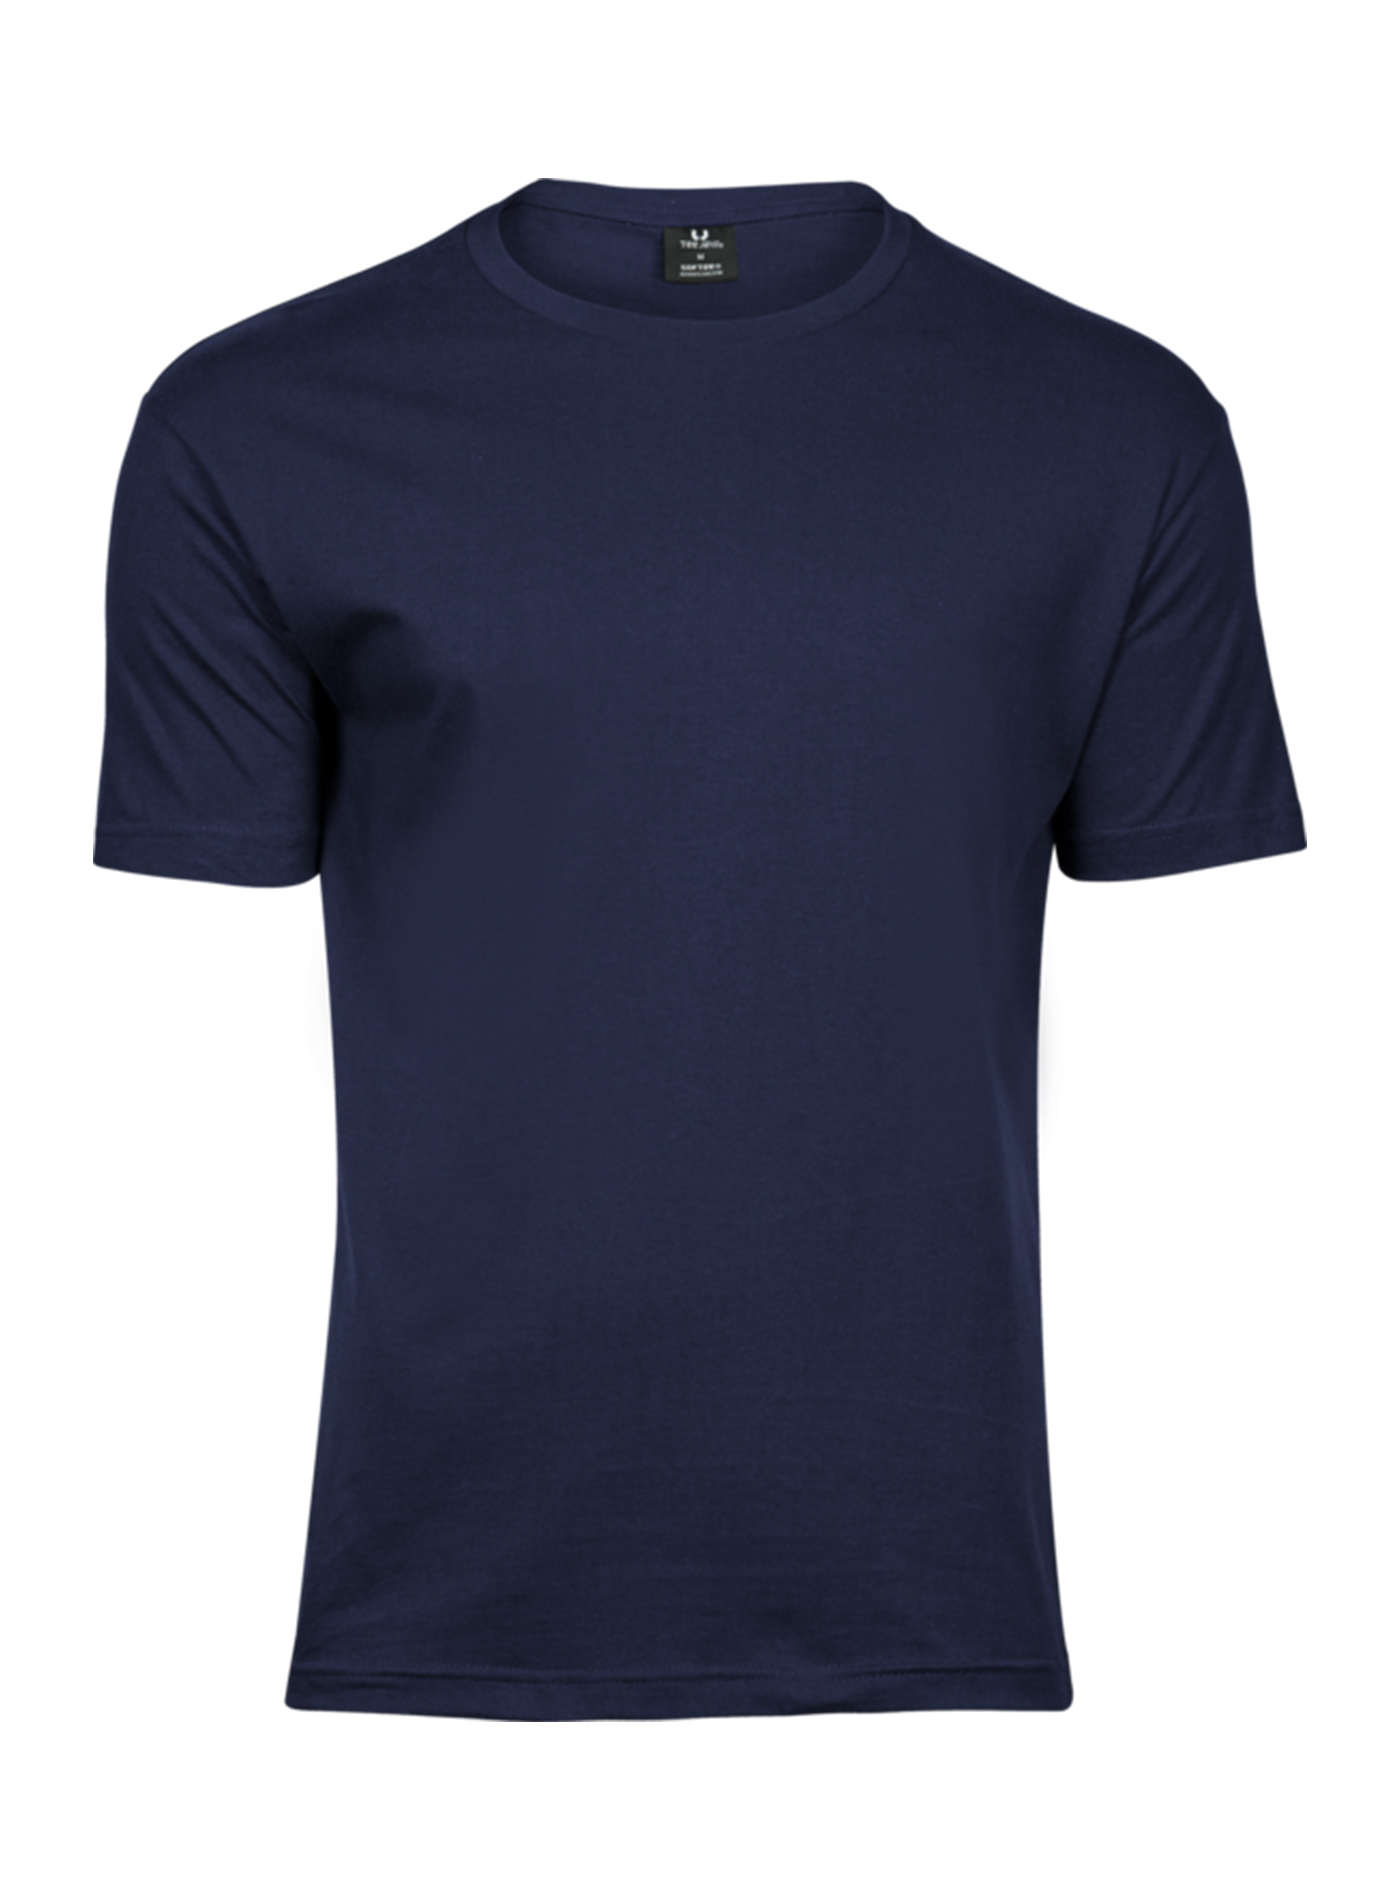 Pánské tričko Fashion Tee Jays - Námořní modrá S